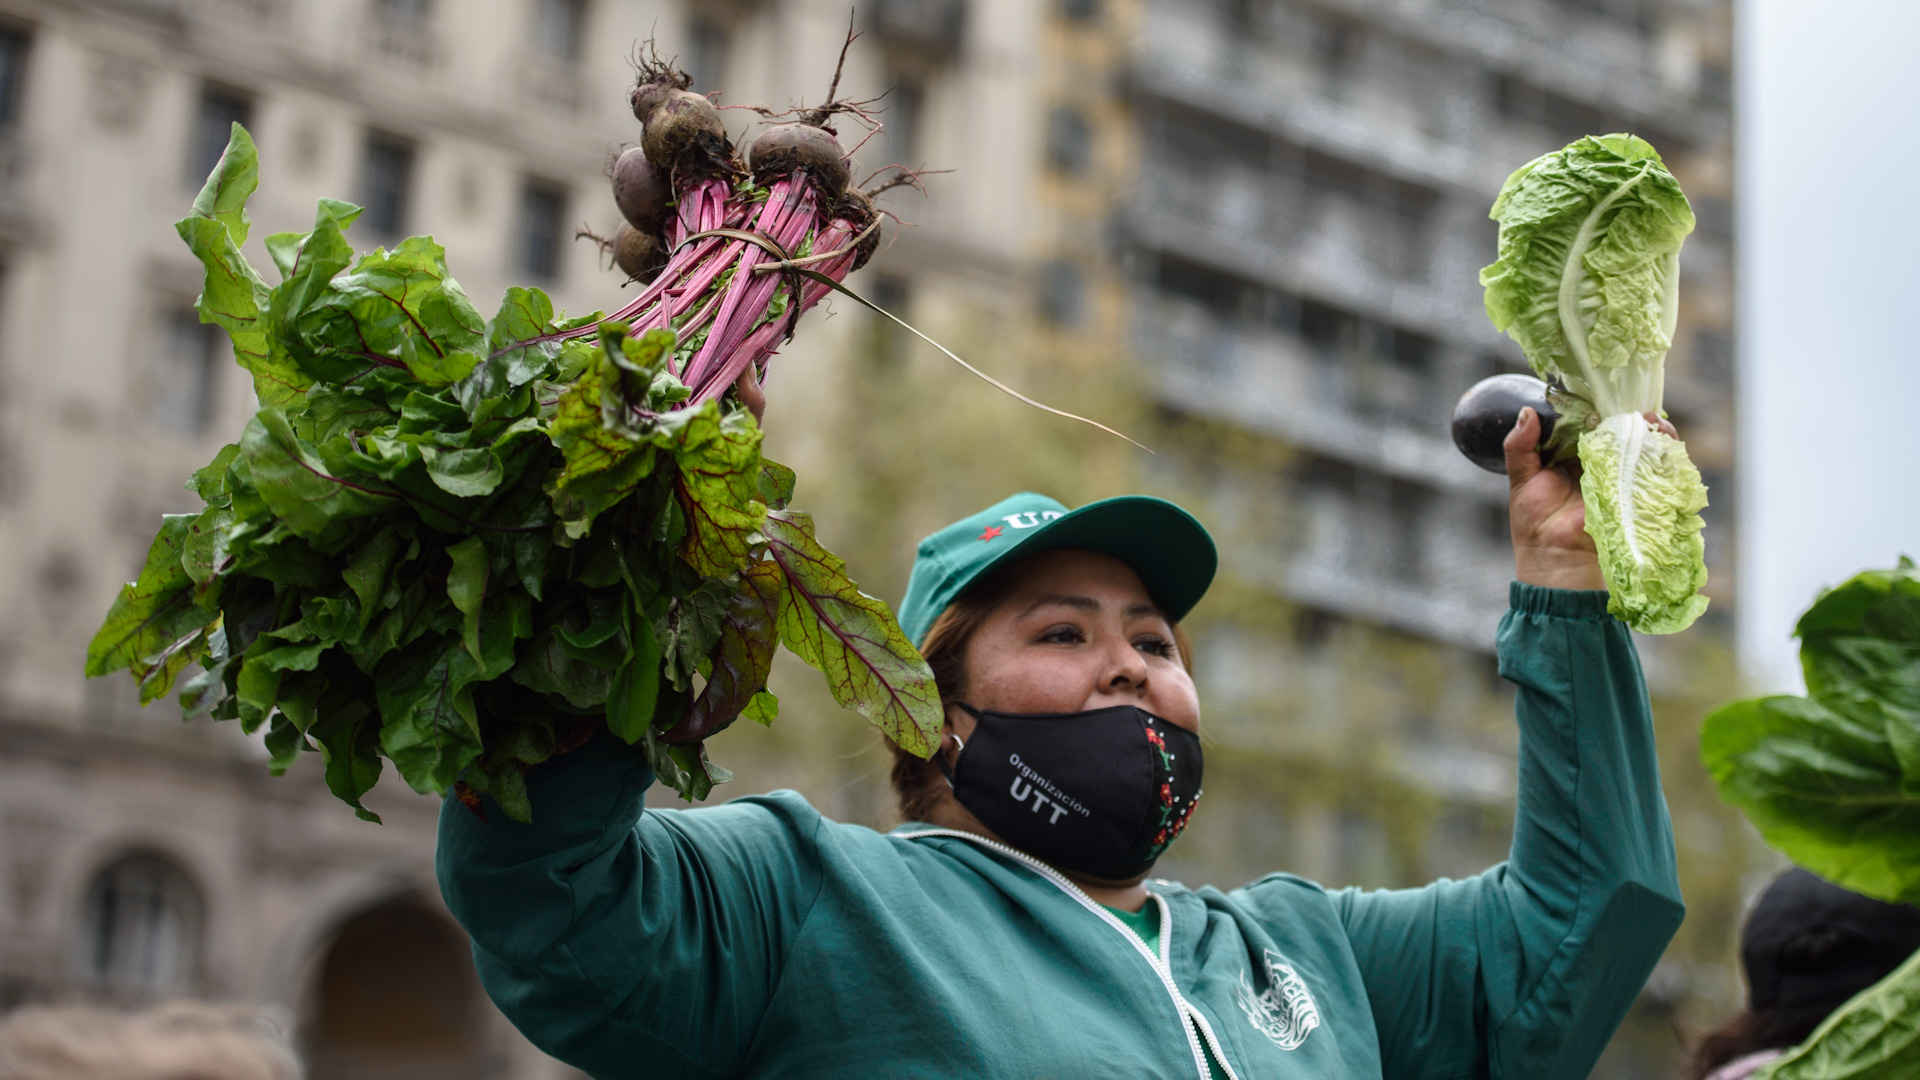 El verdurazo constará en la donación de 20.000 kilos de alimentos a los vecinos que quieran concurrir